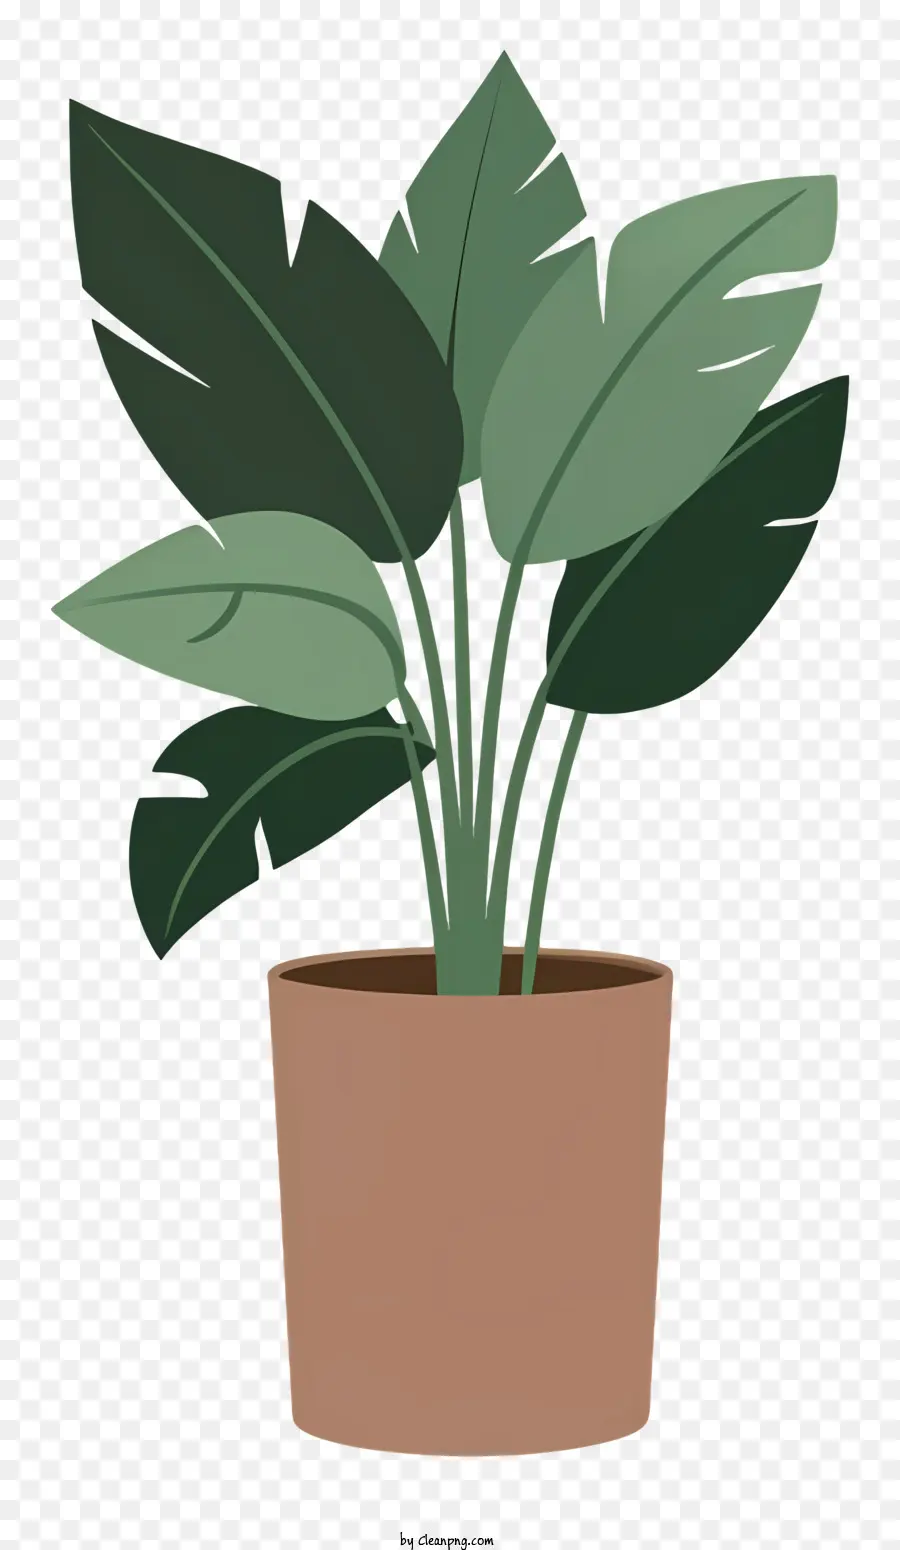 Topfpflanze große Blätter kleine grüne Blätter Steckdosenboden - Topfpflanze mit großen Blättern im Tontopf